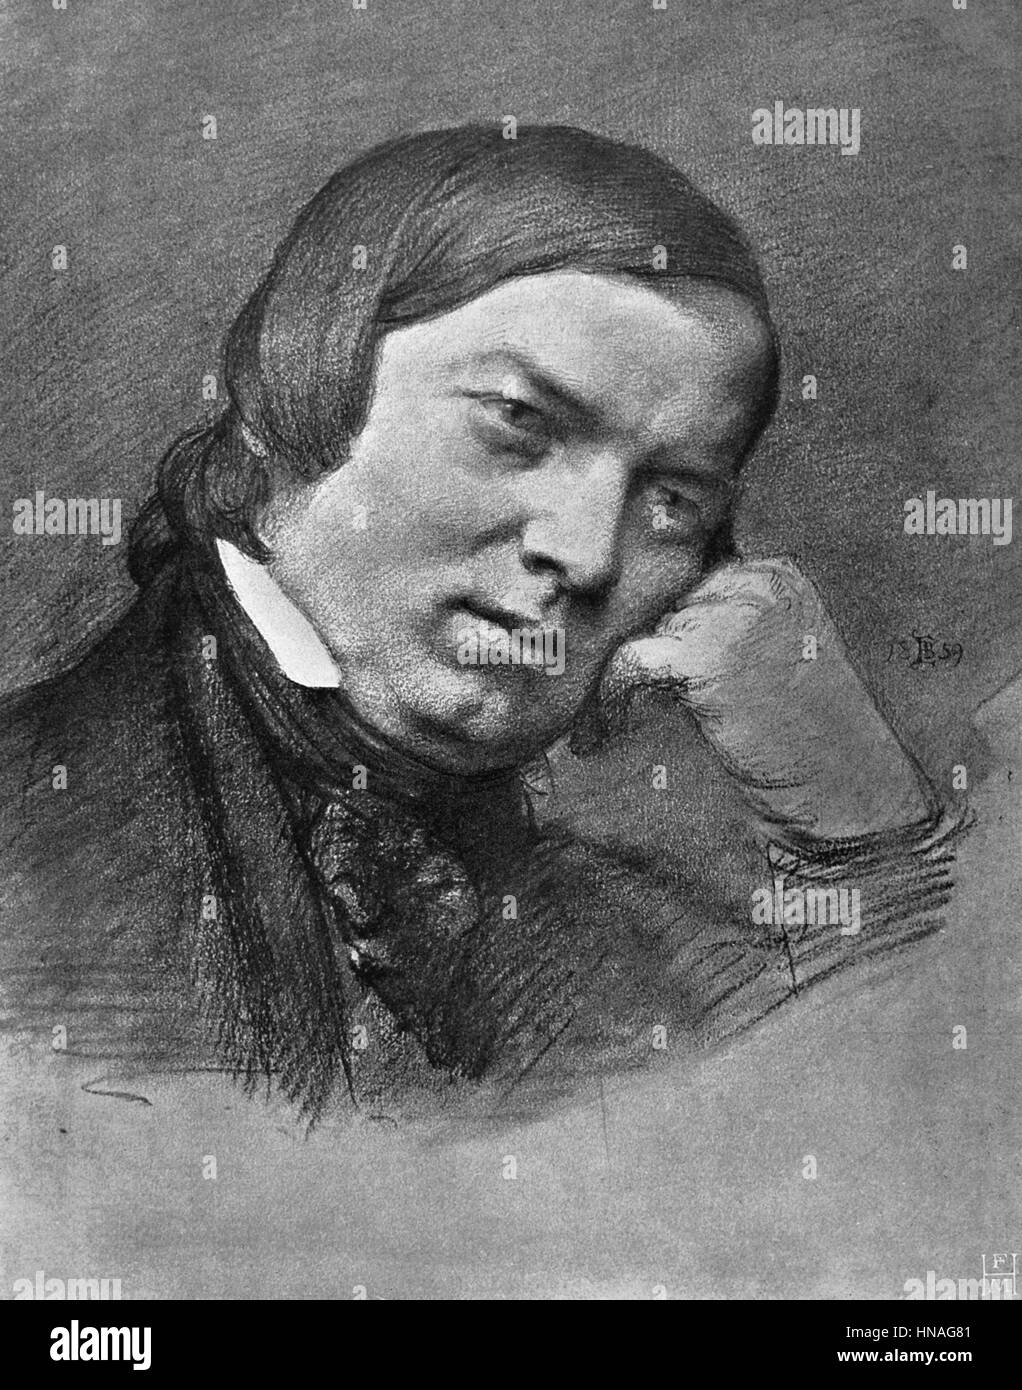 ROBERT SCHUMANN COMPOSER & PIANIST (1850) Stock Photo